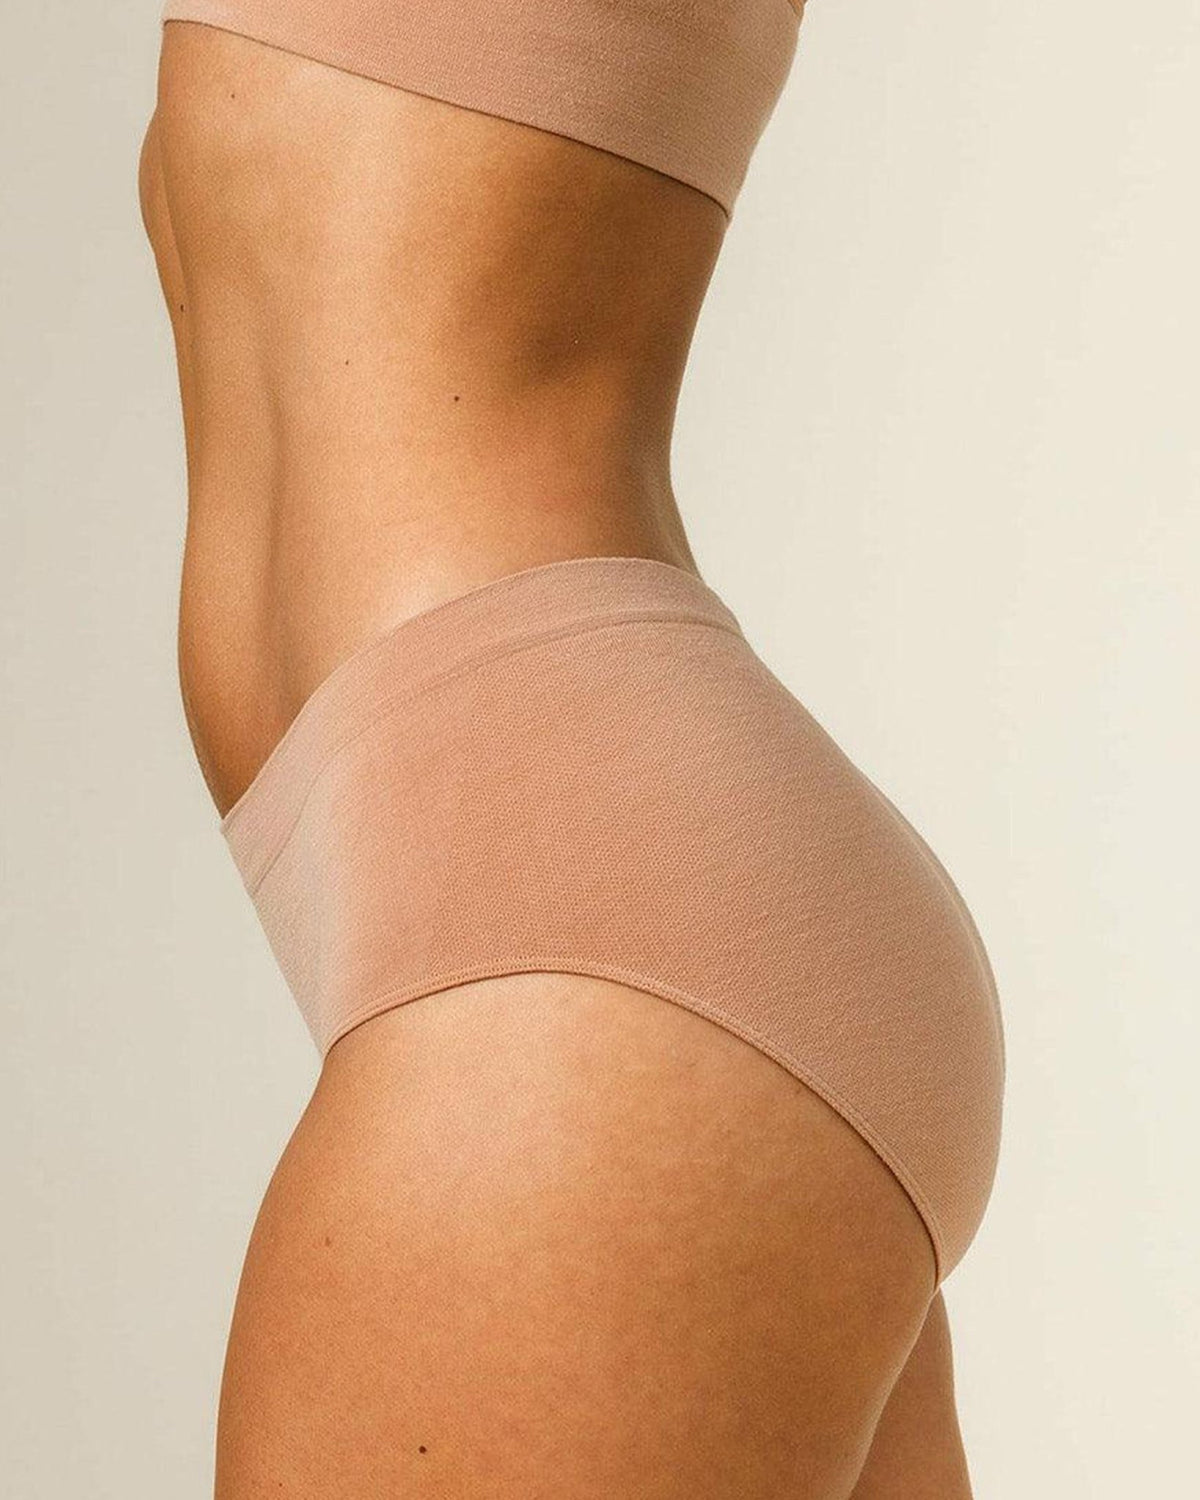 BRANWYN Merino Underwear  Performance Intimates for Active Women